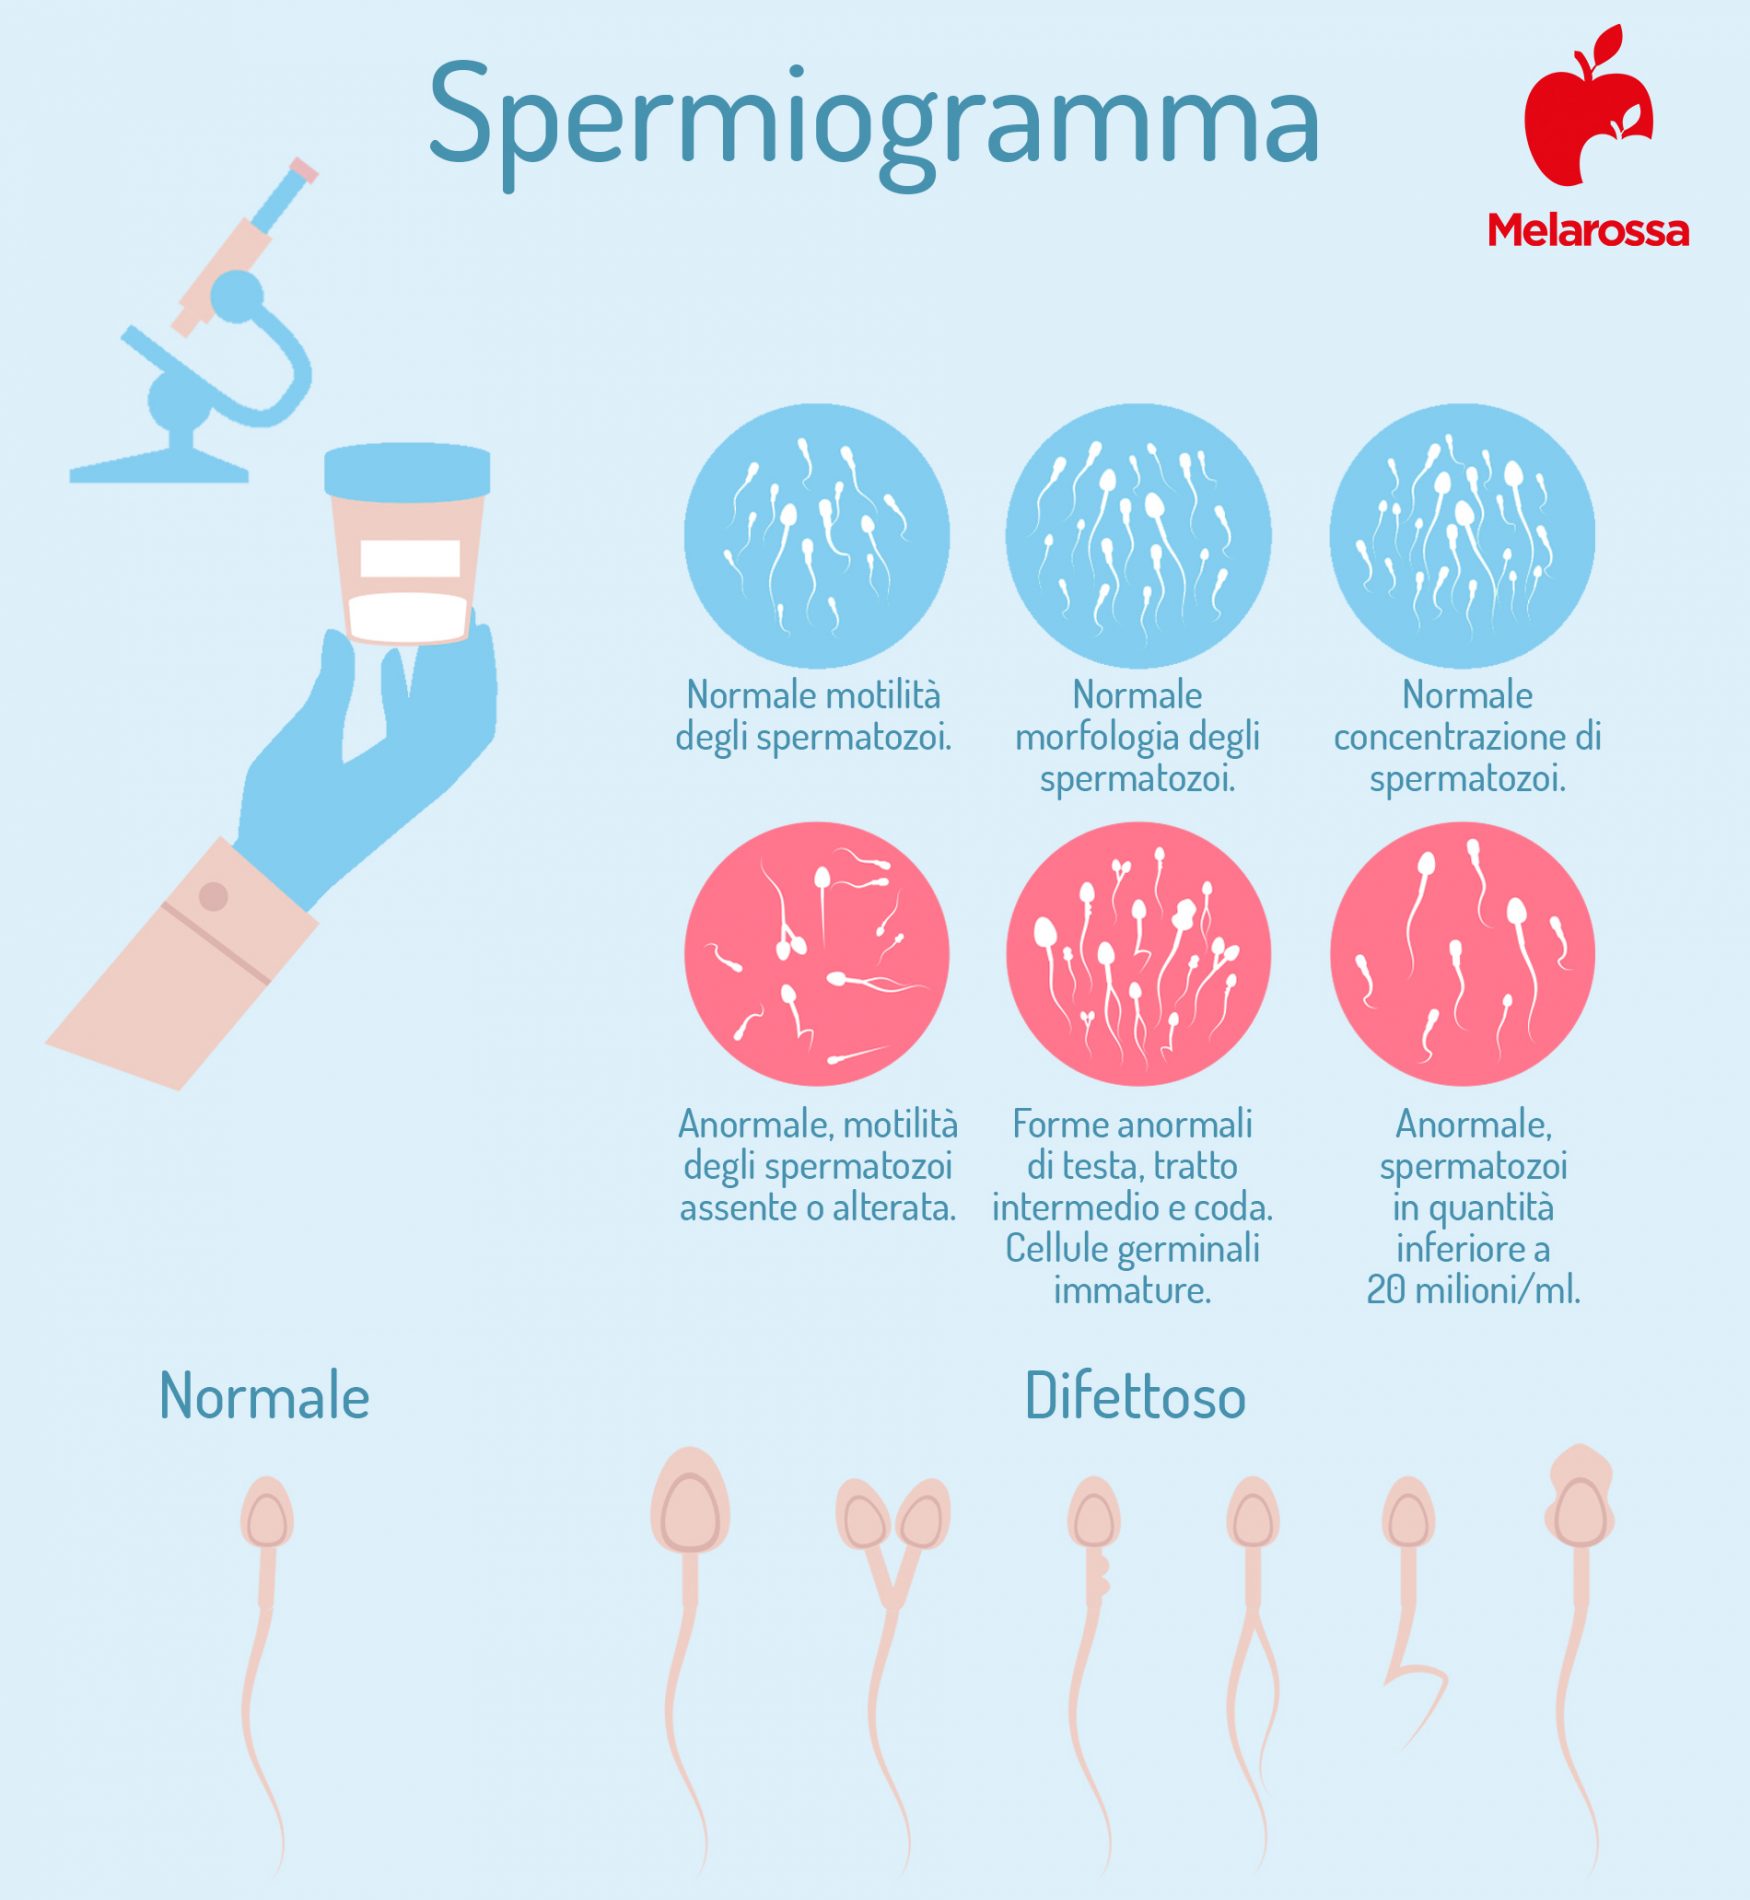 spermiogramma: che cos'è